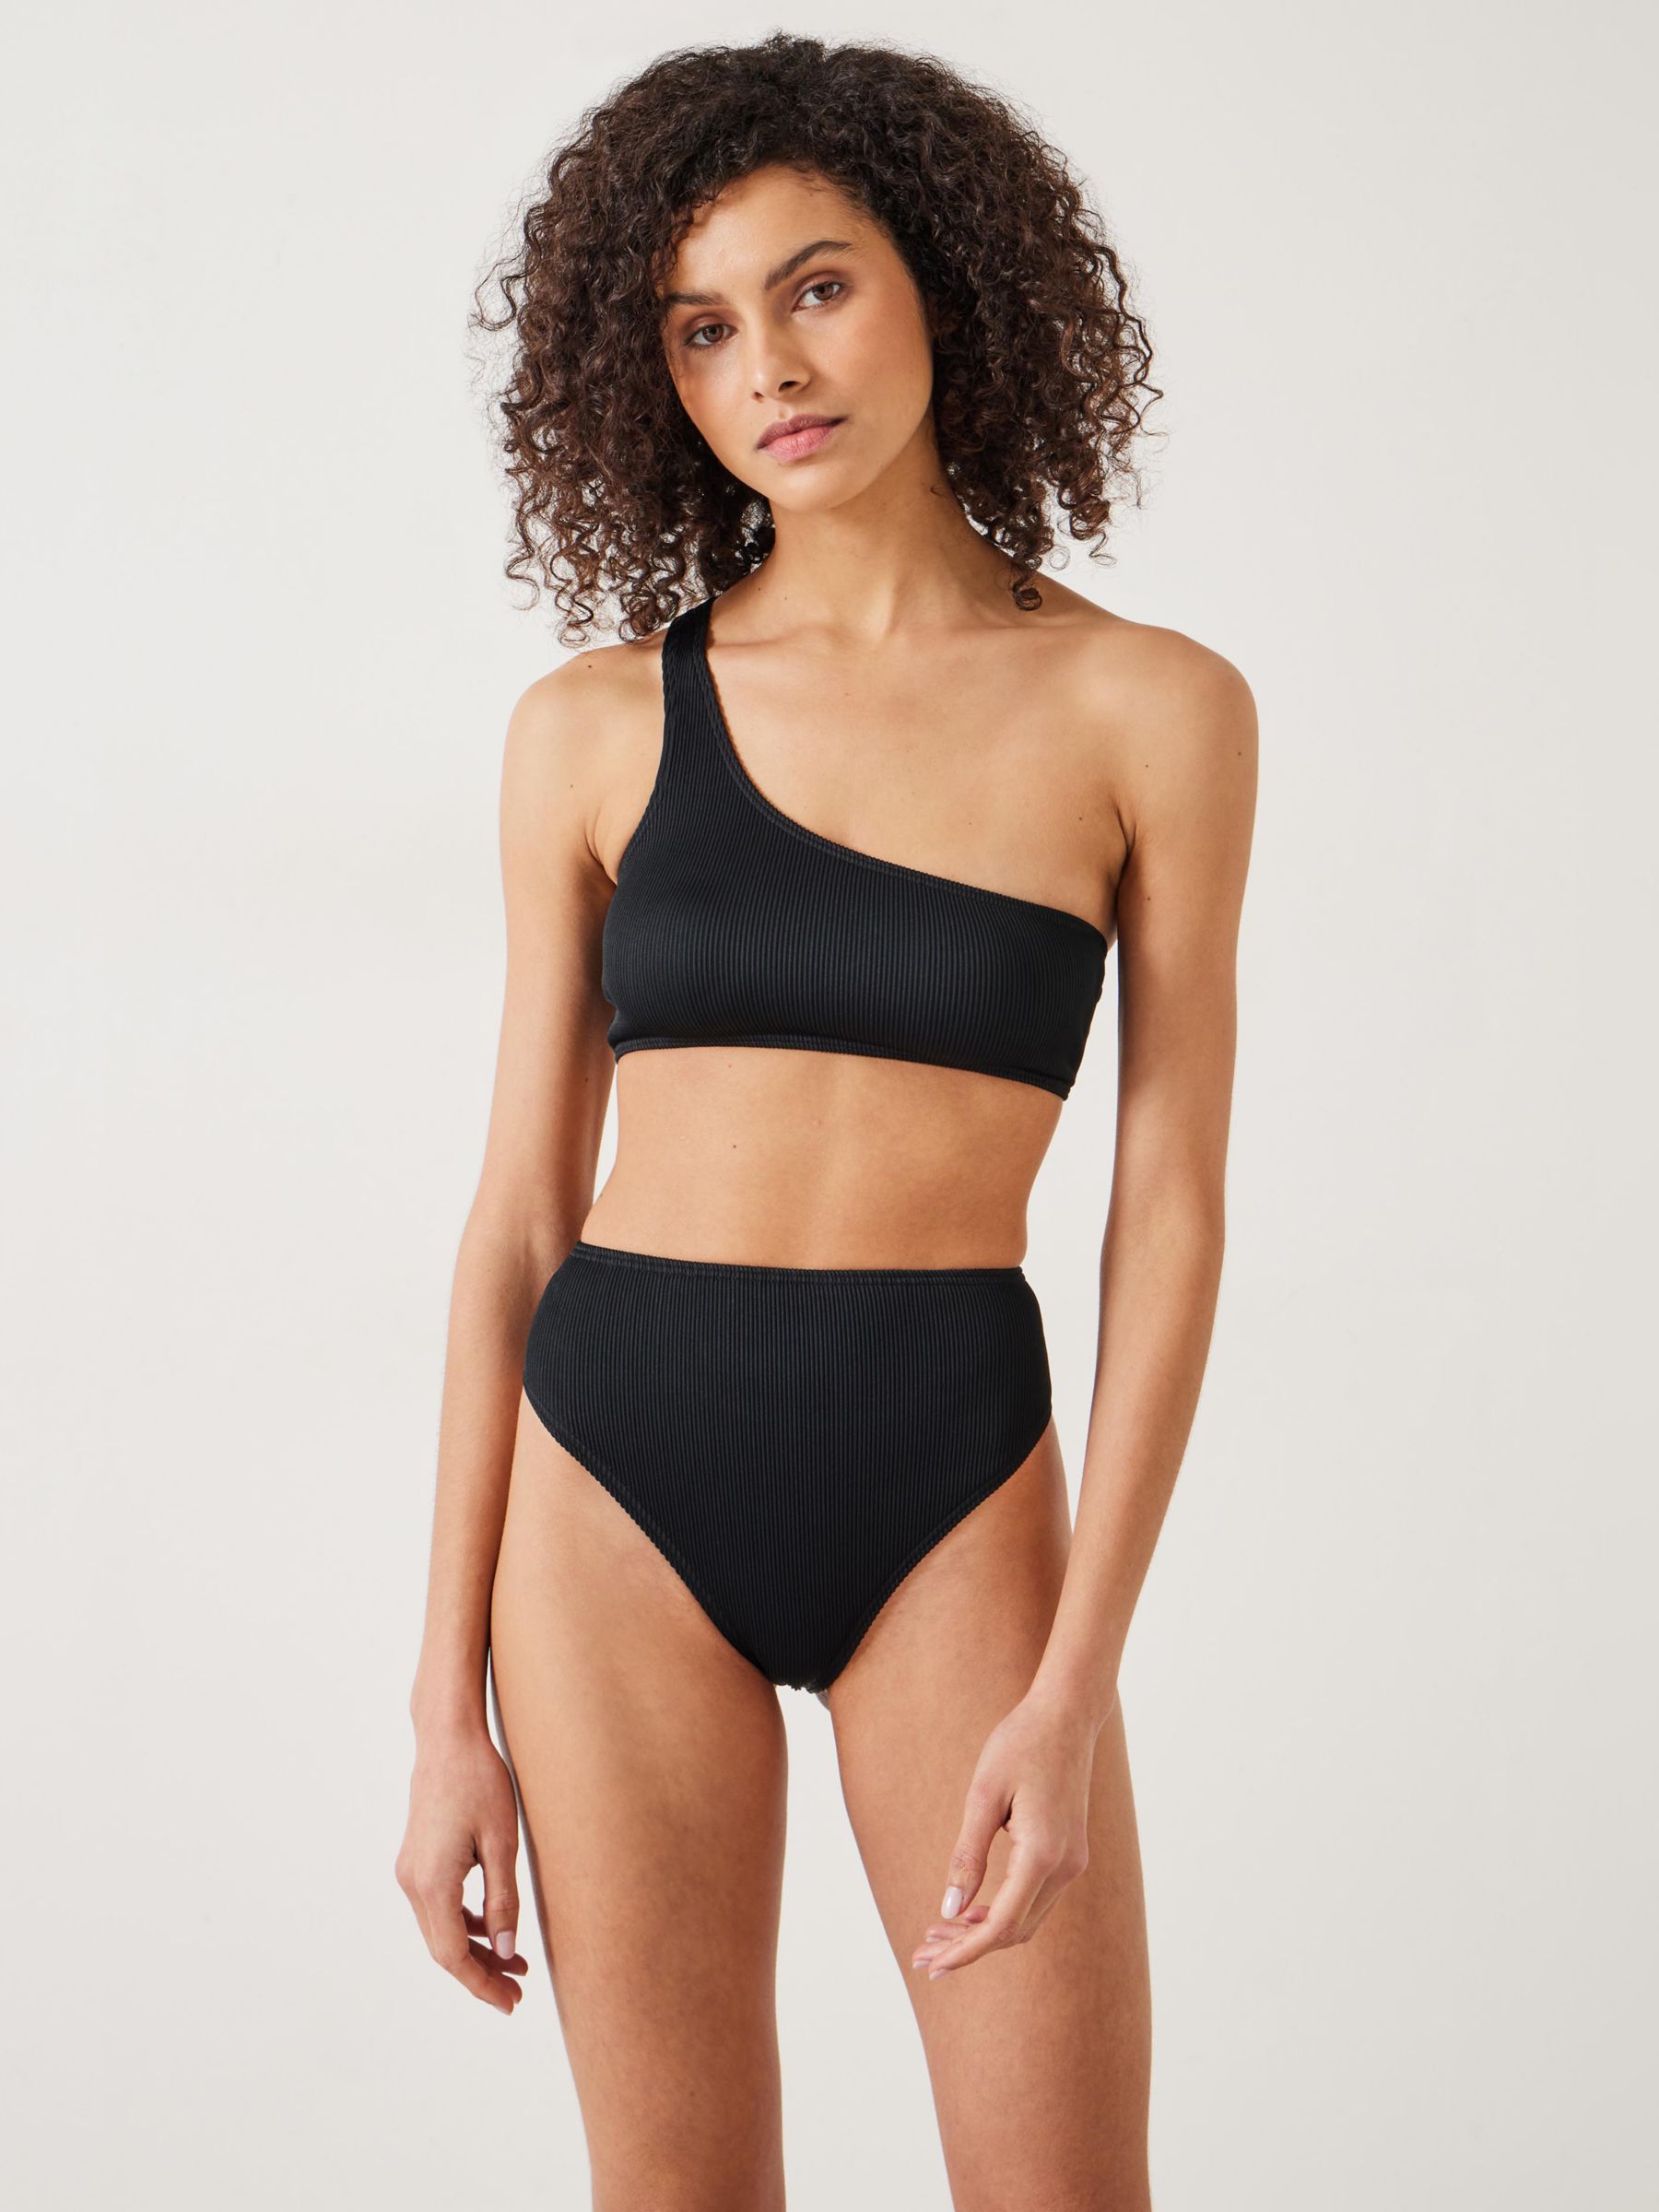 Lola Square Bikini Bottom  Luxury Women's Sustainable Swimwear